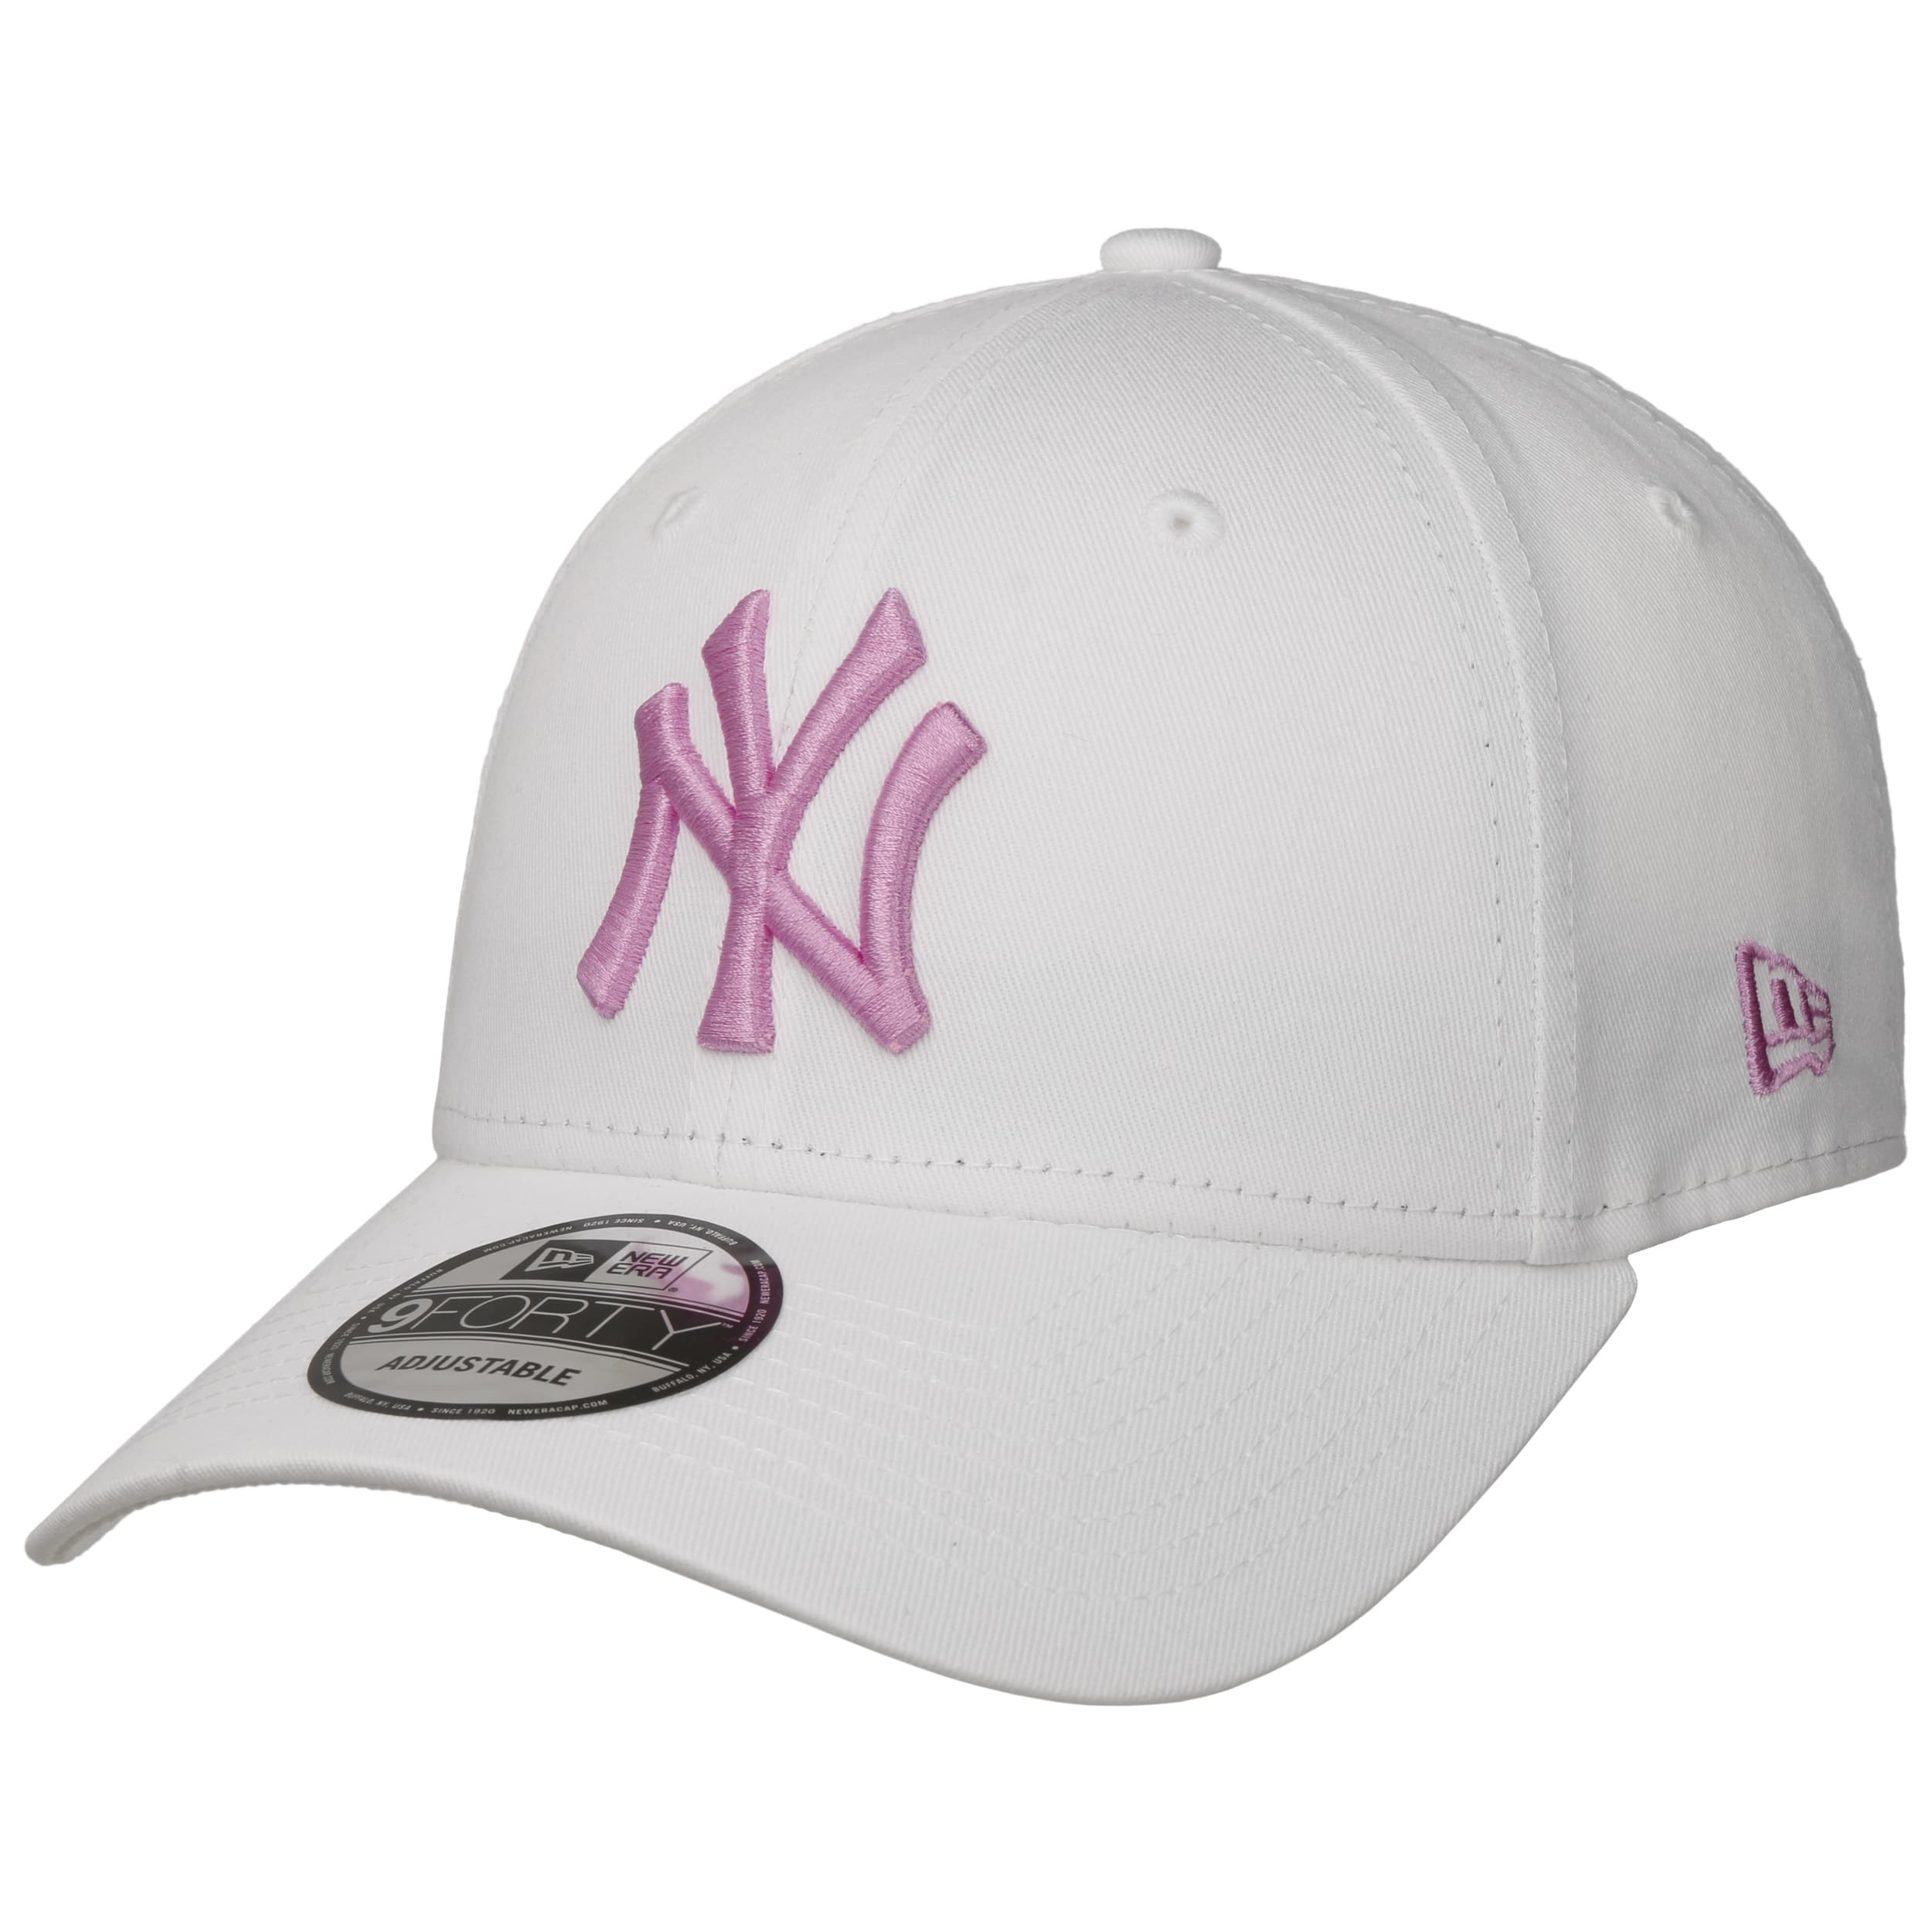 MLB Inspired - Pro Series Baseball Cap